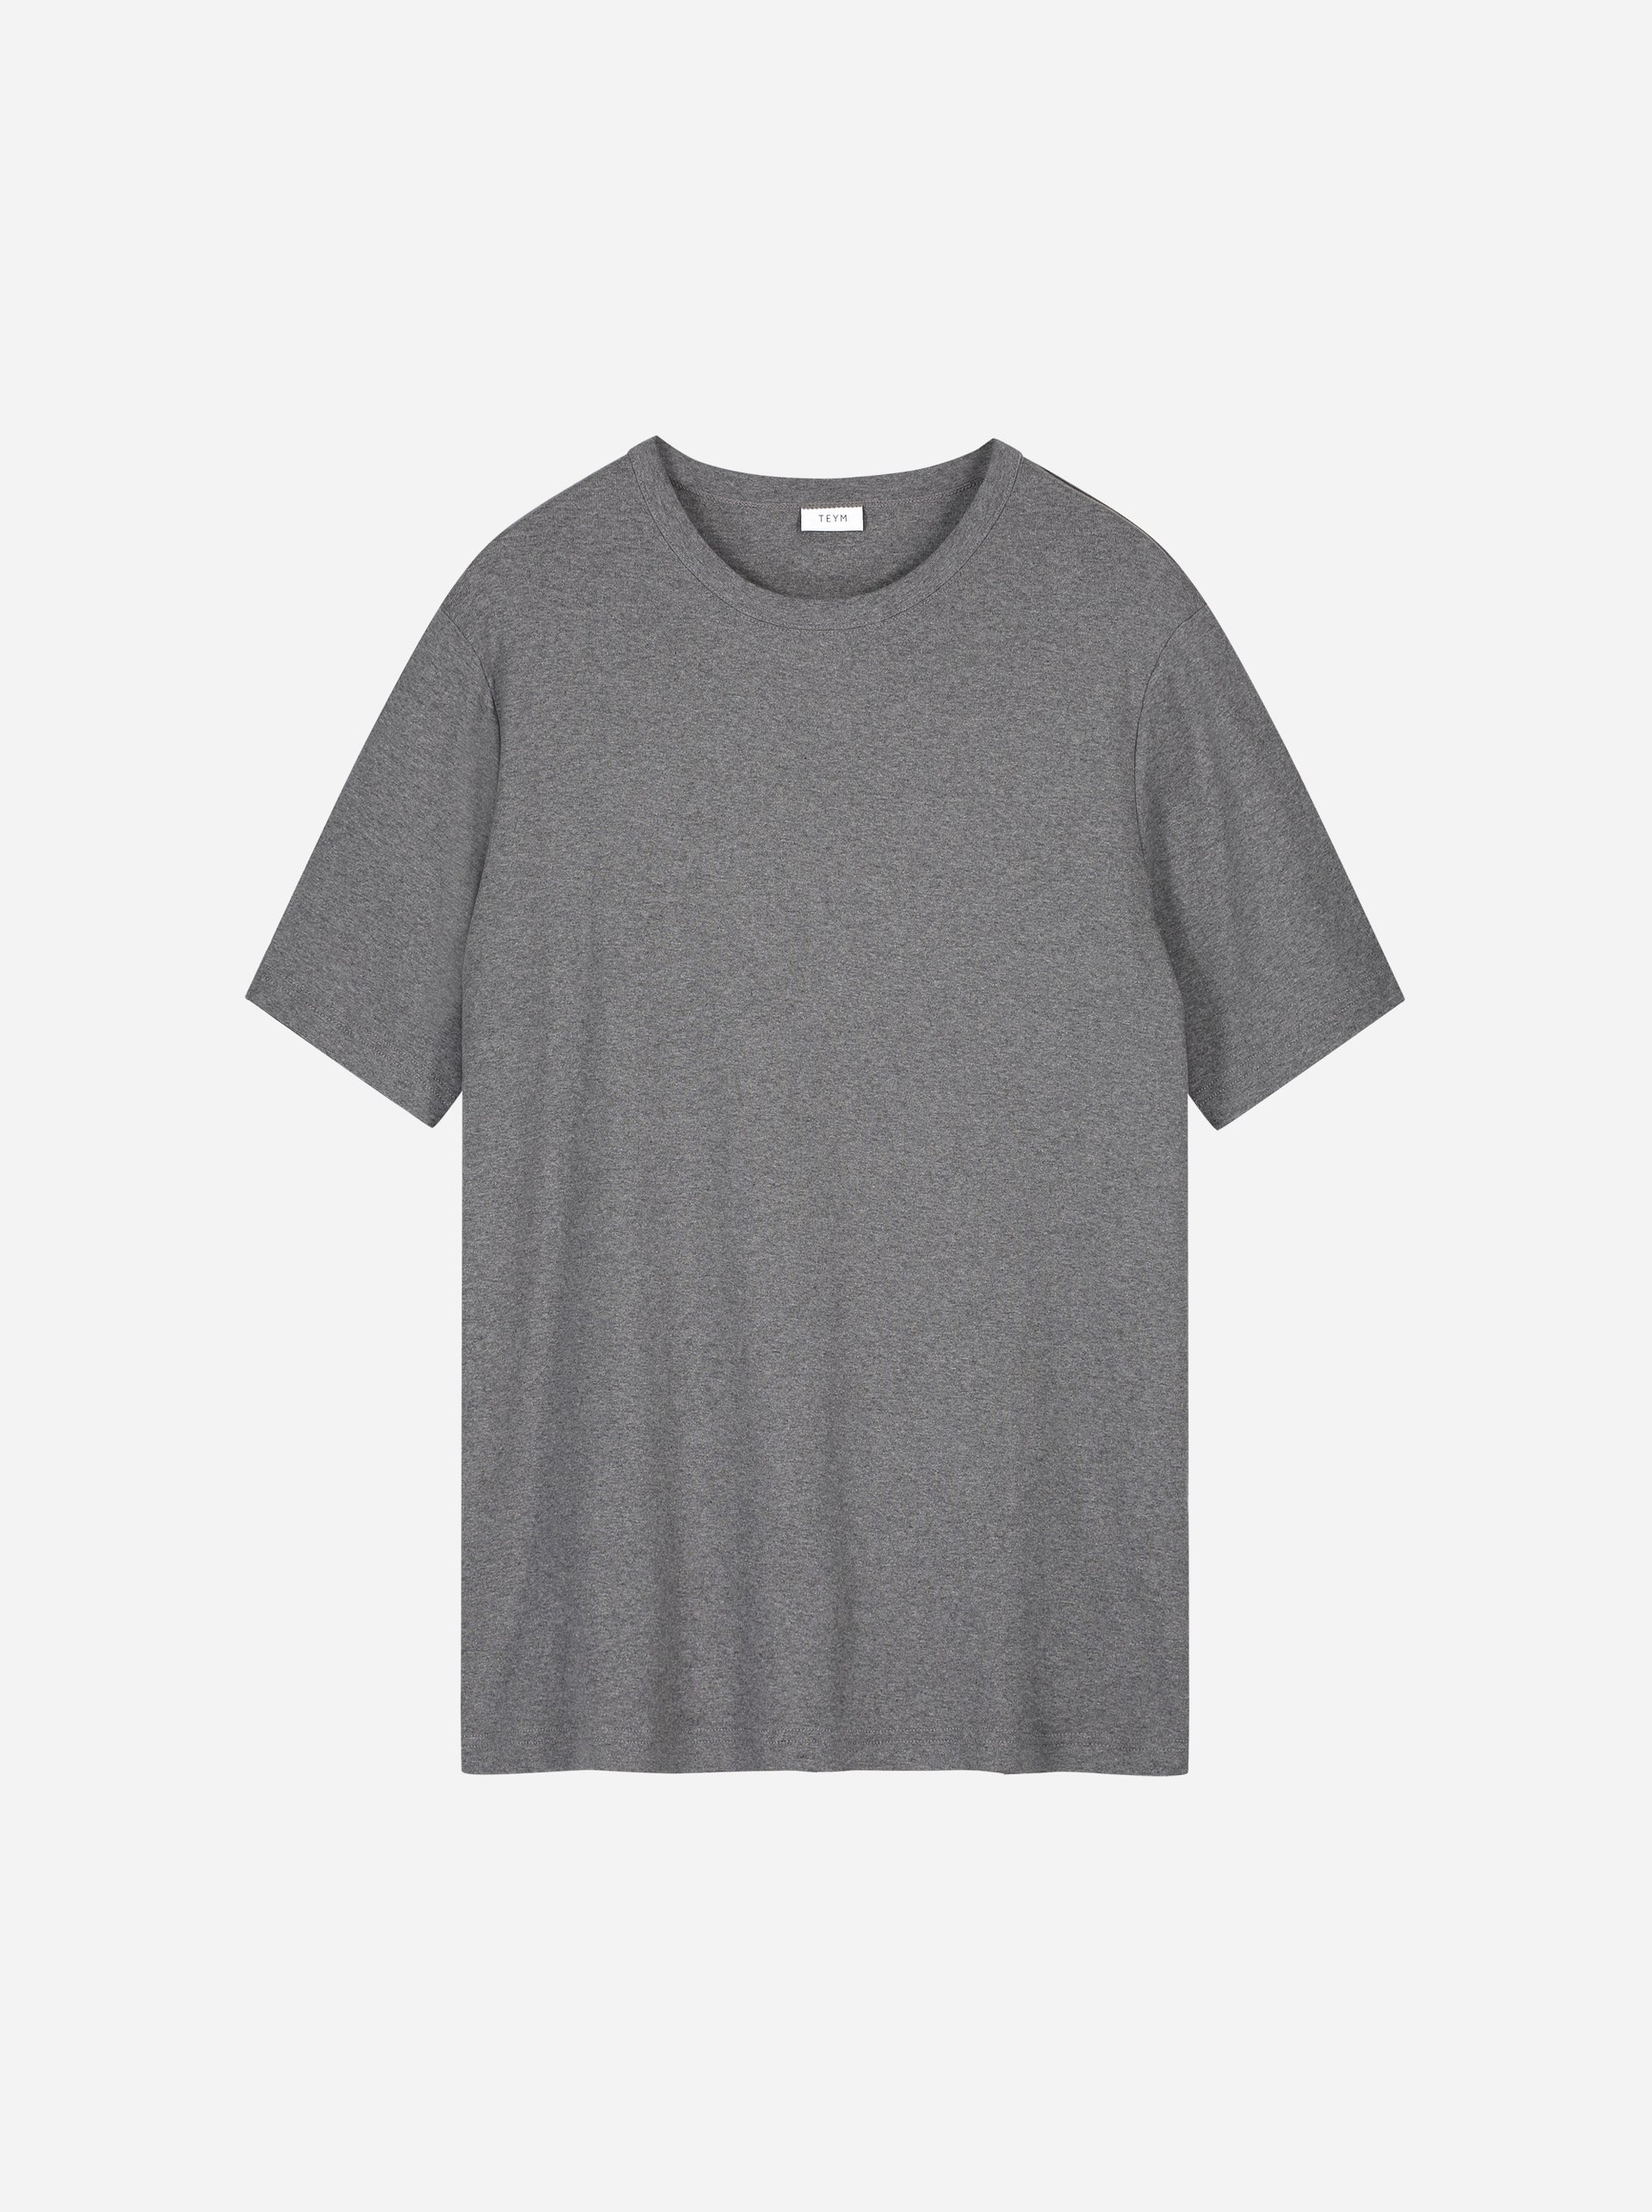 Teym - The T-Shirt - Men - Melange grey - 3B